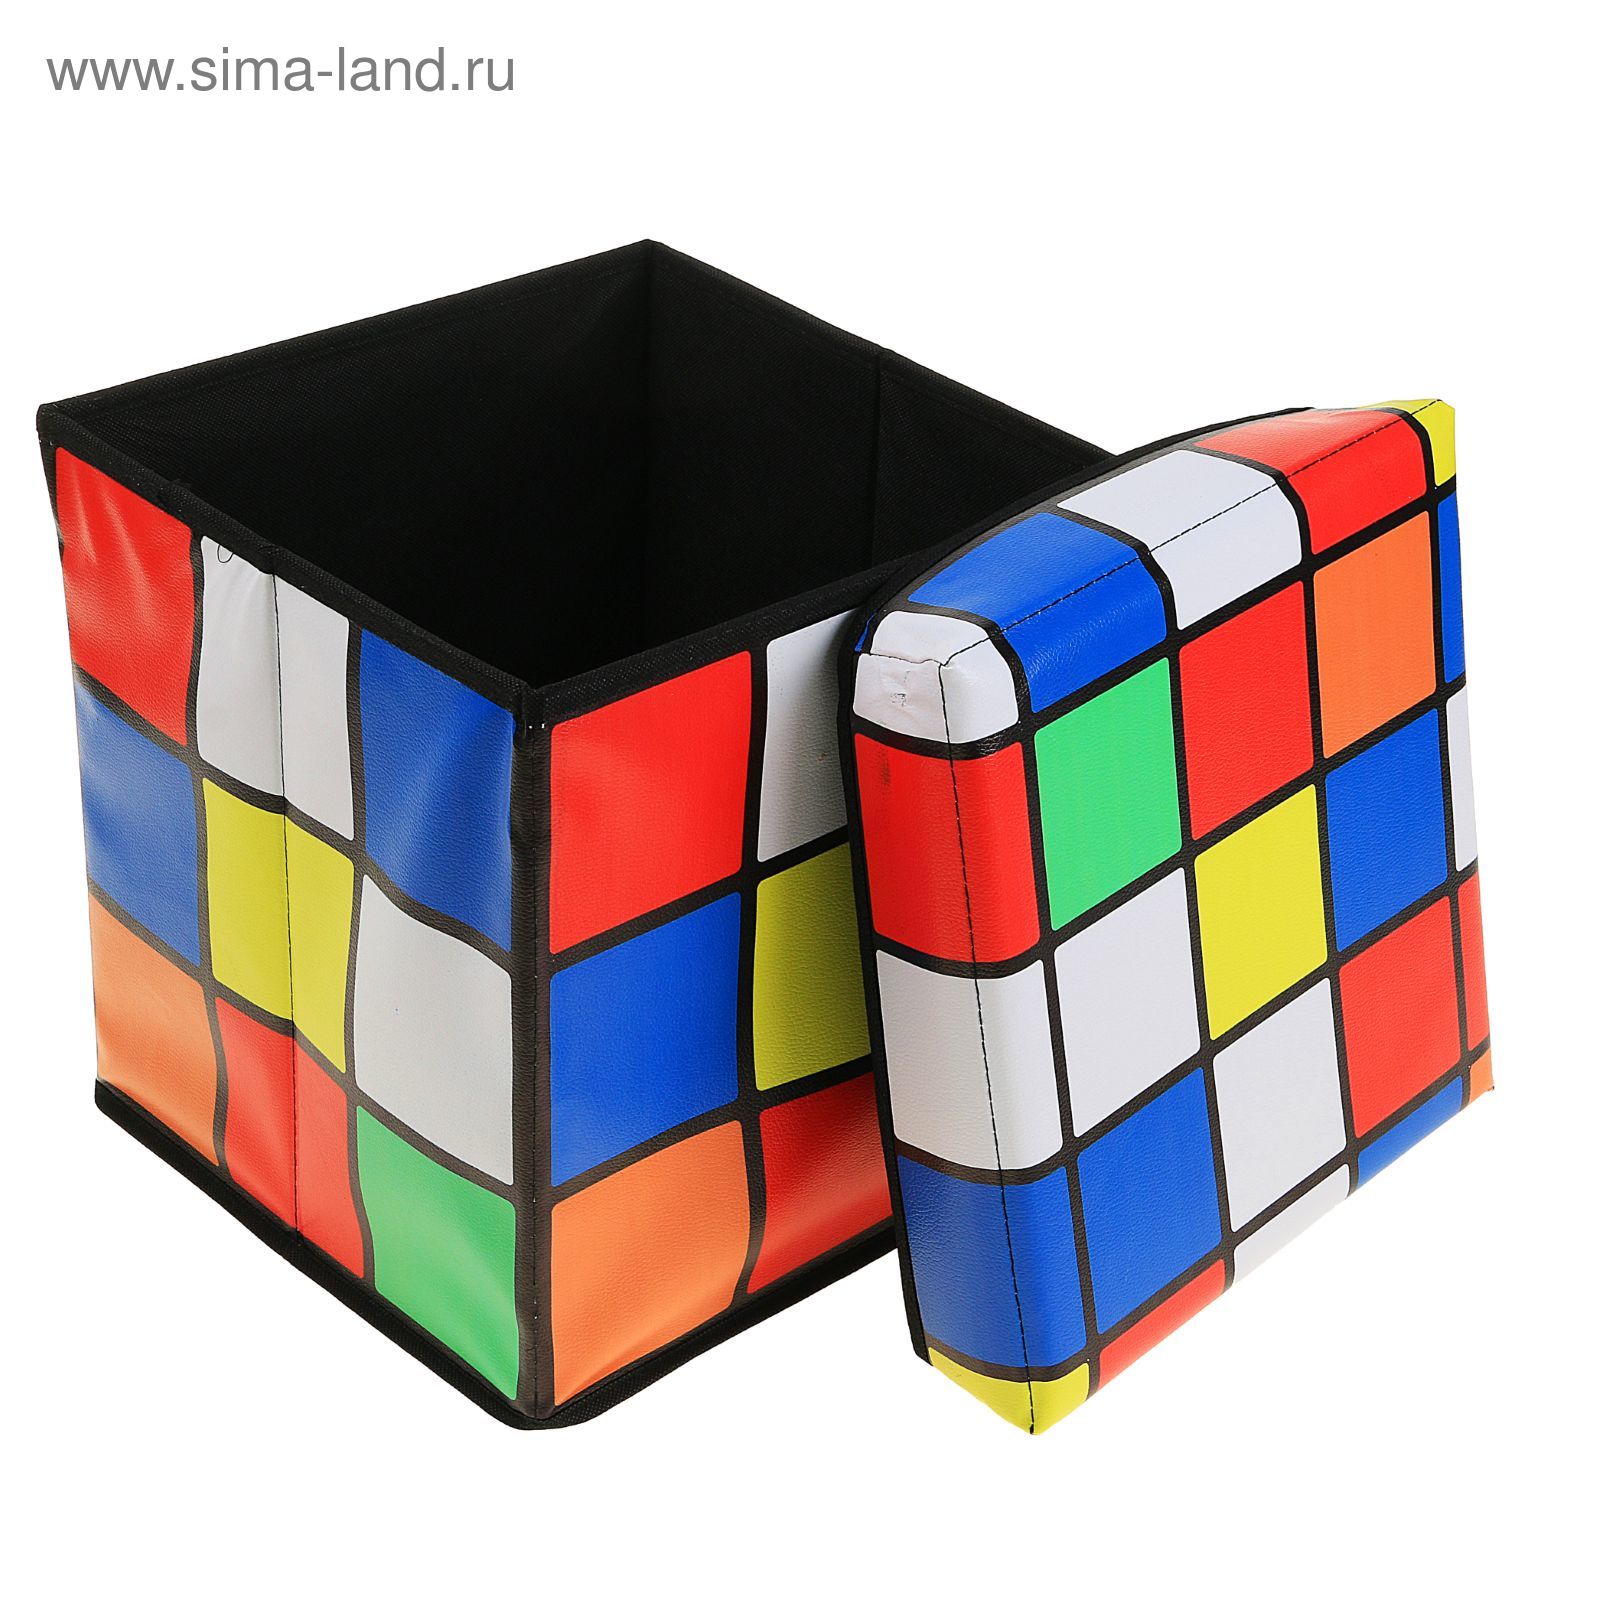 Cube купить спб. Кубик Рубика 30х30х30. Пуф для релаксации кубик 30 (Вик) 30*30*25см 002. Пуфик кубик рубик. Пуфик кубик.